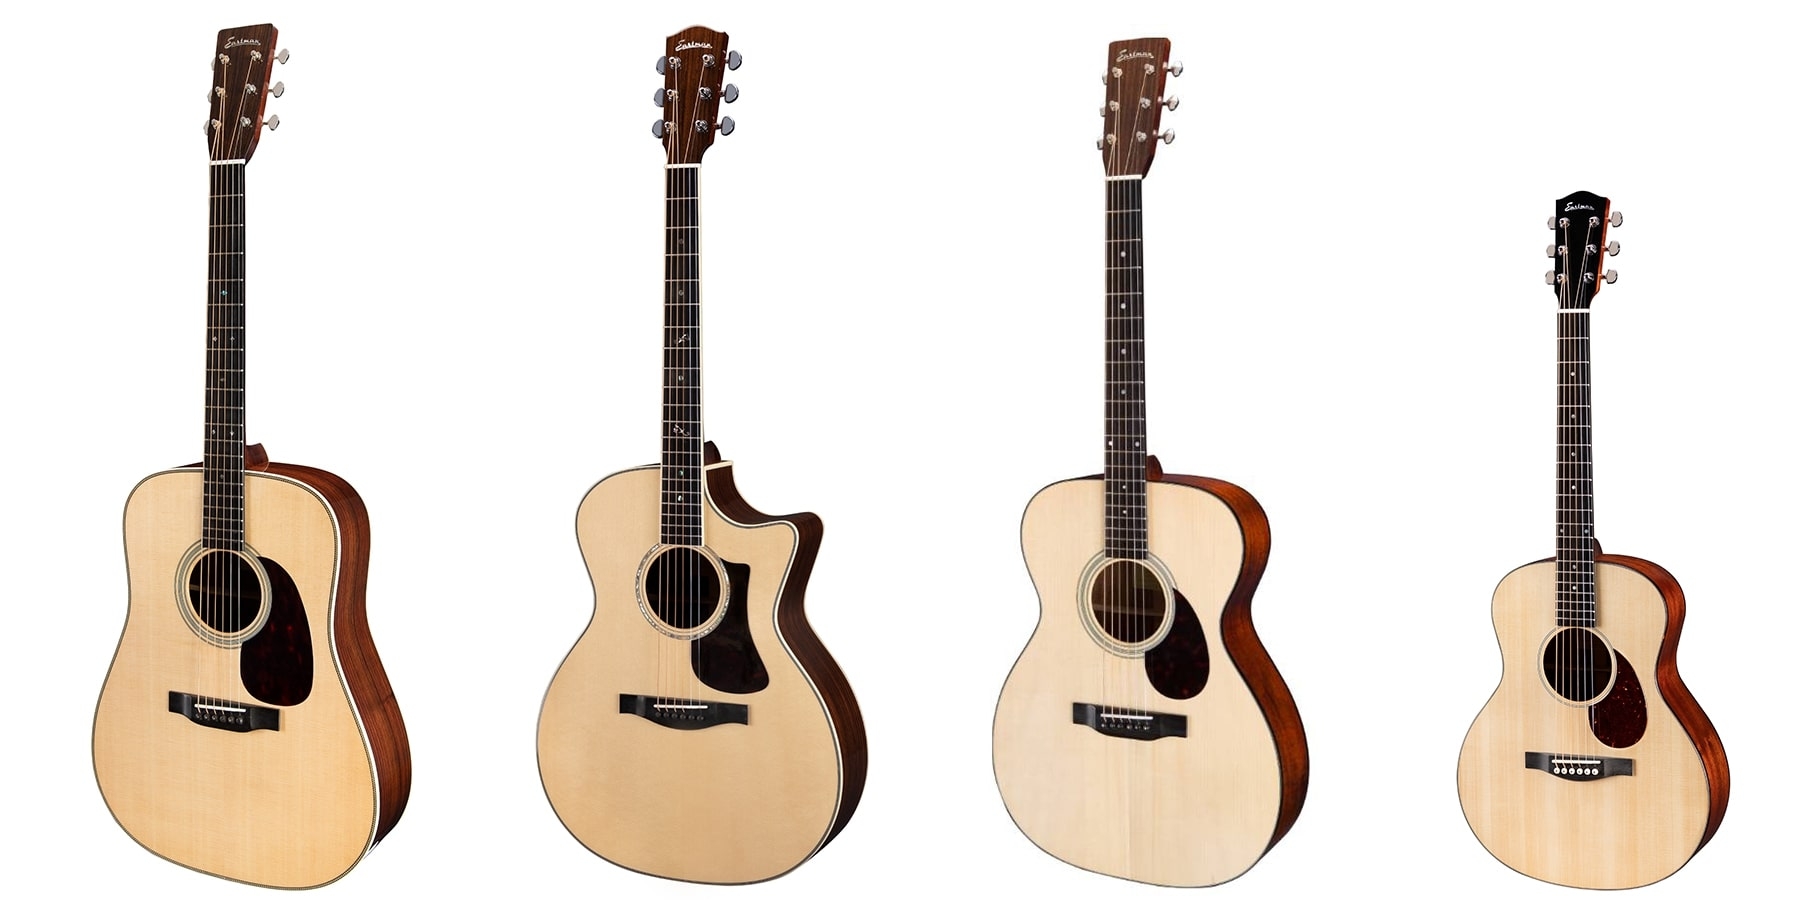 Western gitaar kopen - western-gitaar-kopen-gitaarvormen(1)-min